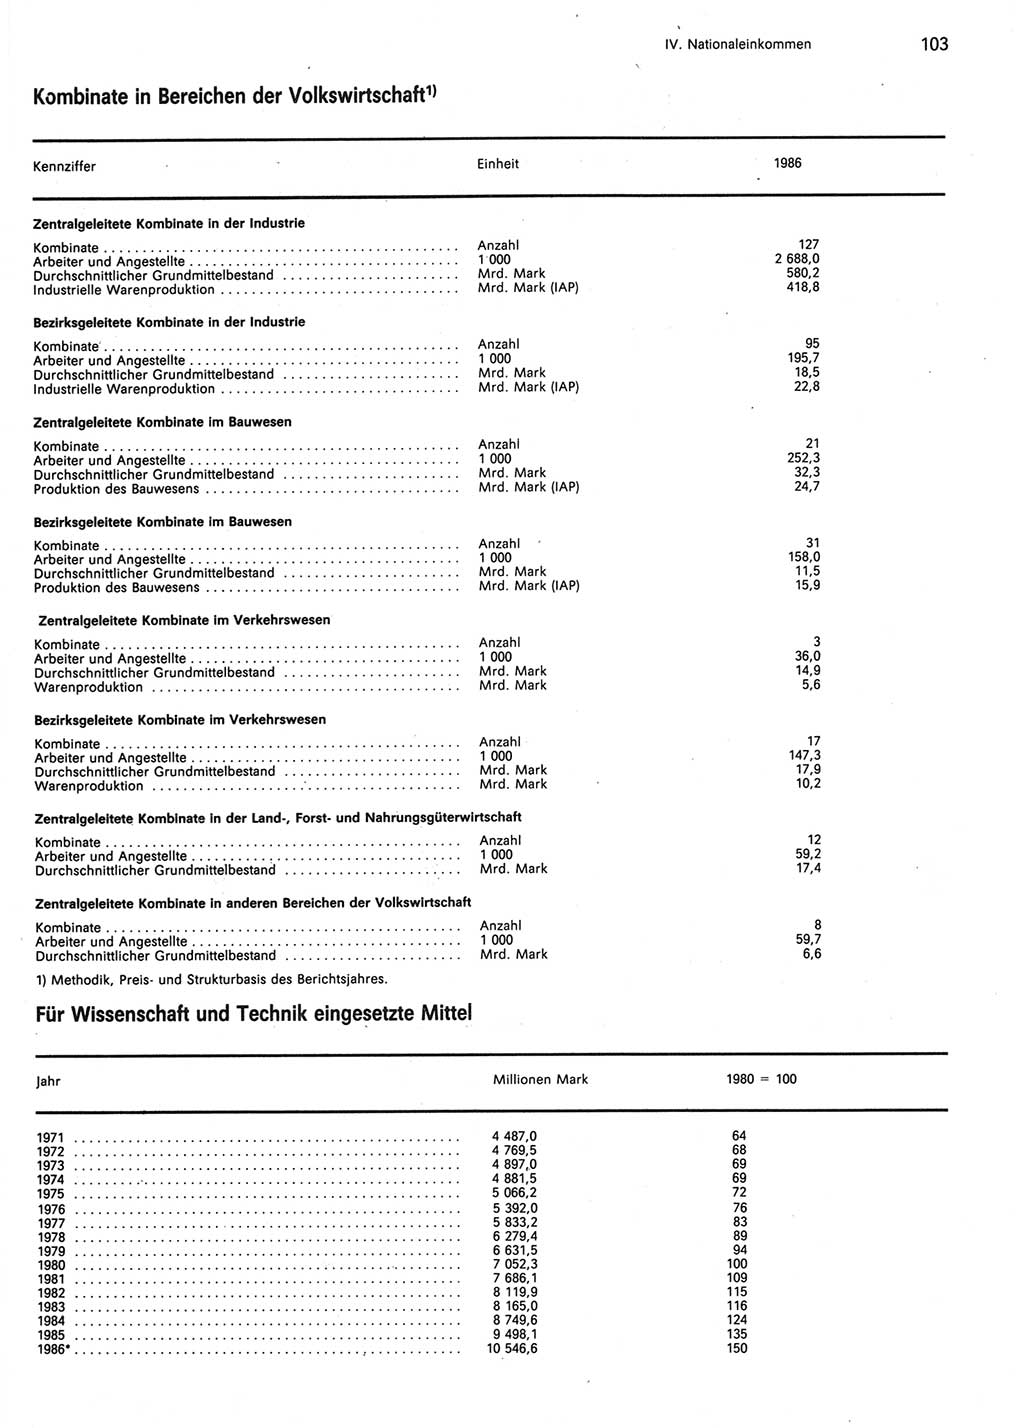 Statistisches Jahrbuch der Deutschen Demokratischen Republik (DDR) 1987, Seite 103 (Stat. Jb. DDR 1987, S. 103)